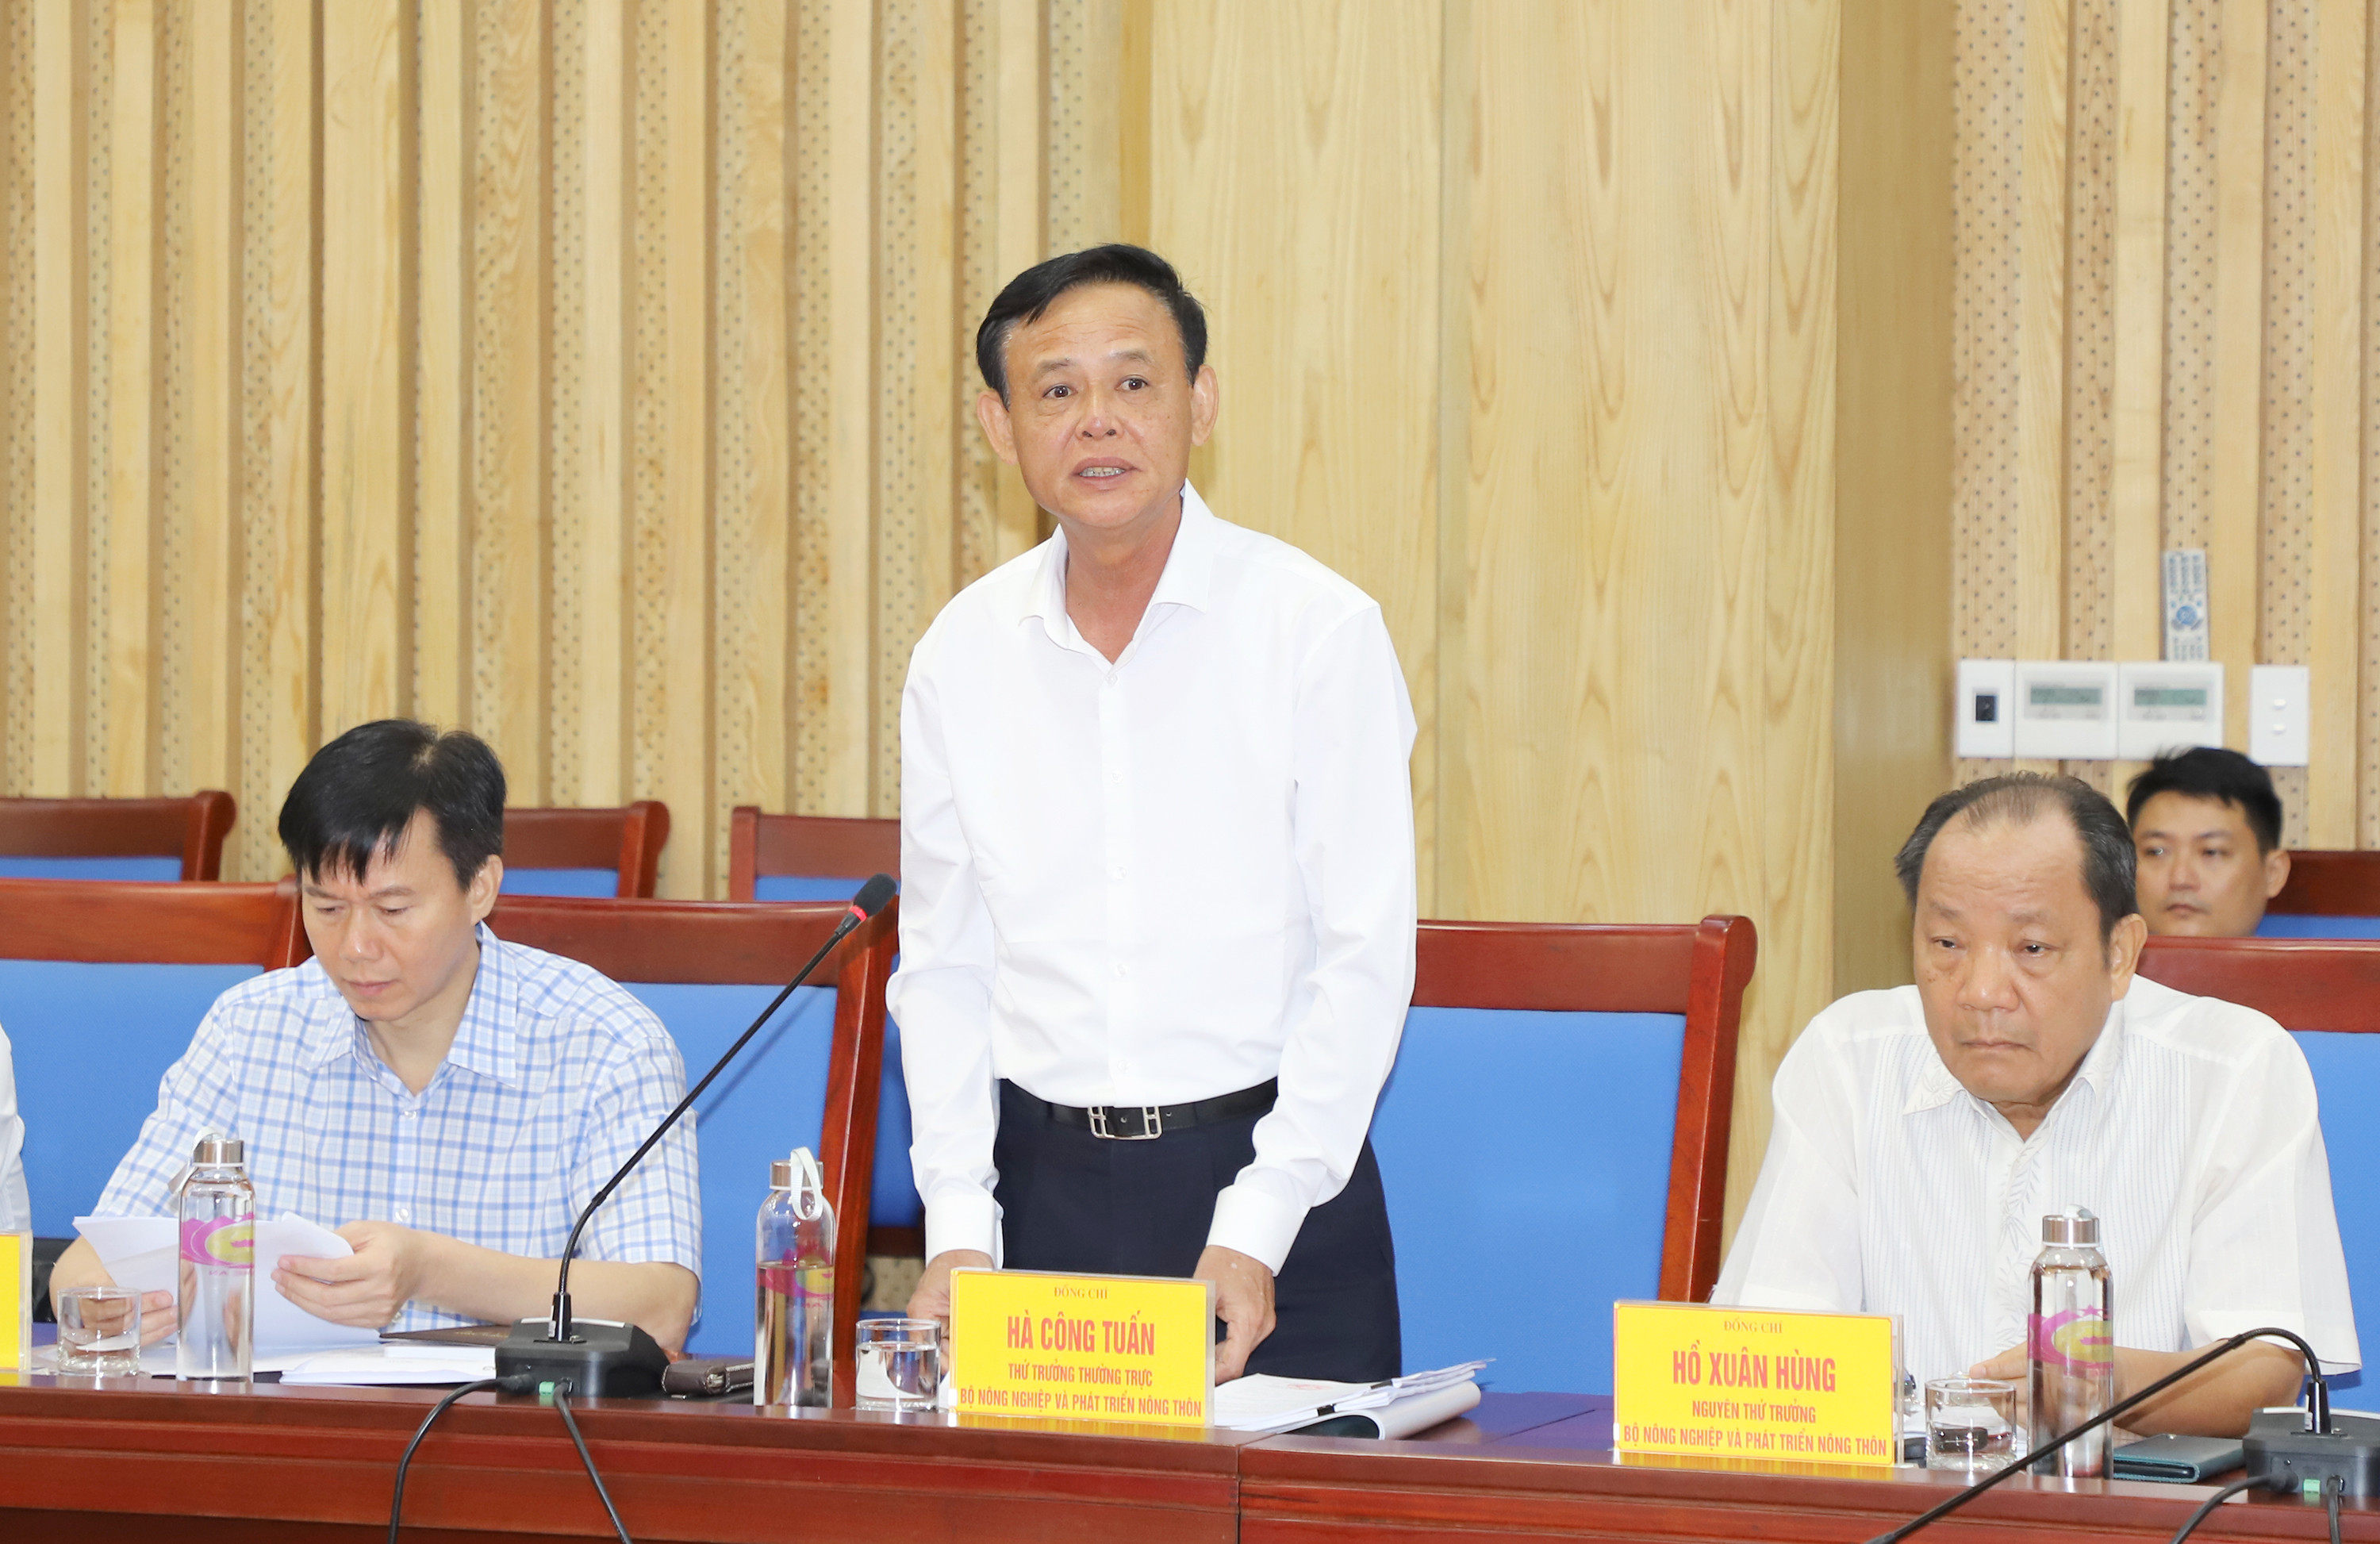 Đồng chí Hà Công Tuấn - Thứ trưởng Thường trực Bộ NN&PTNT phát biểu tại buổi làm việc. Ảnh: Phạm Bằng